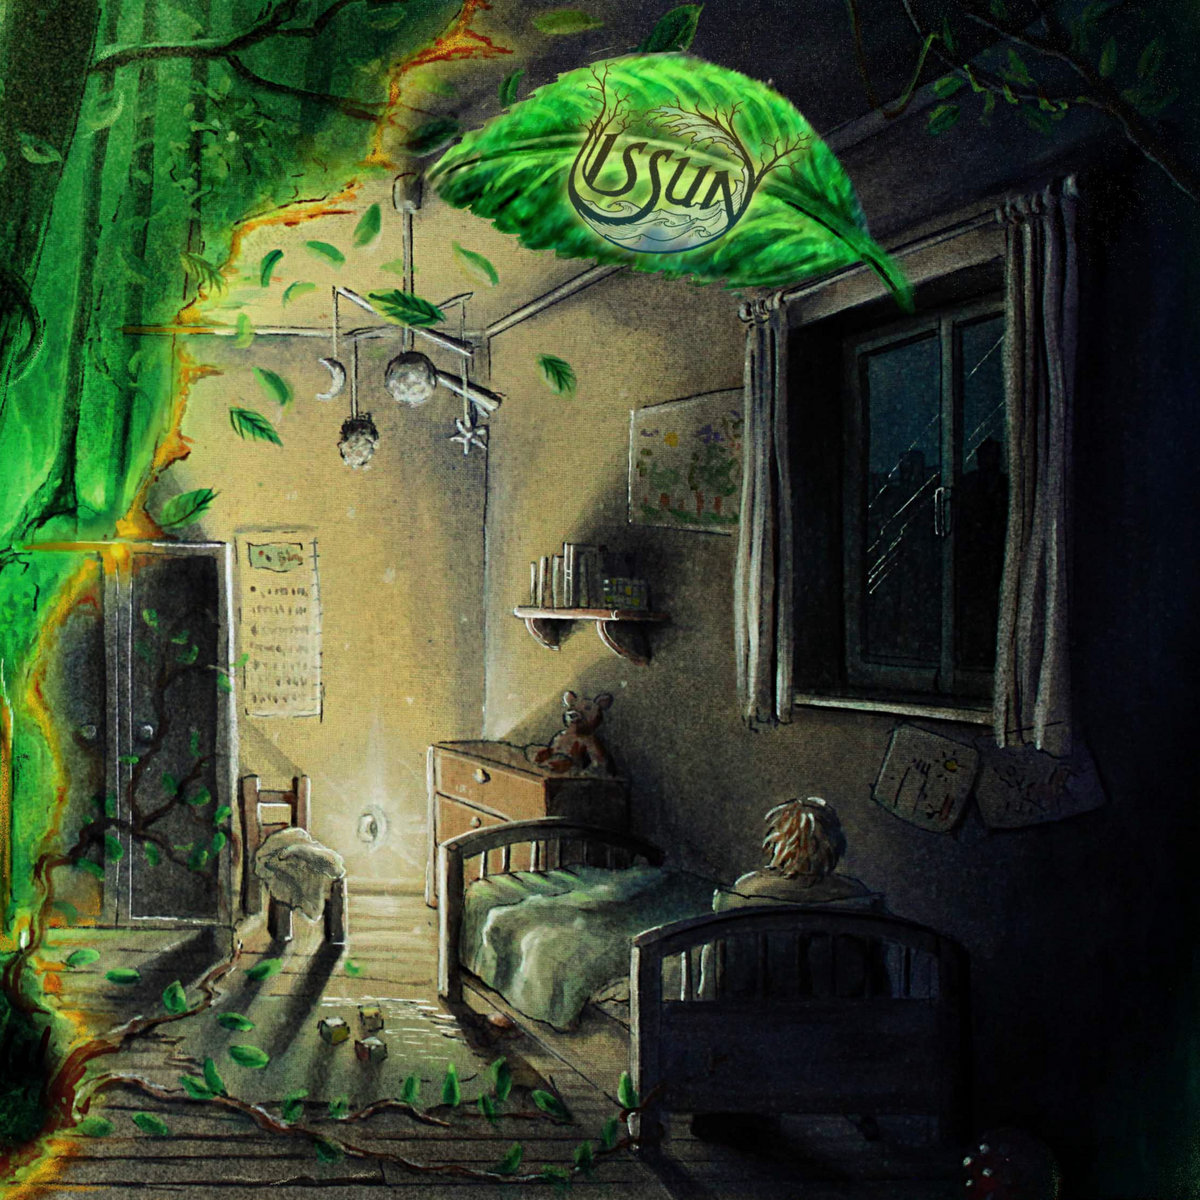 ISSUN - Dark Green Glow